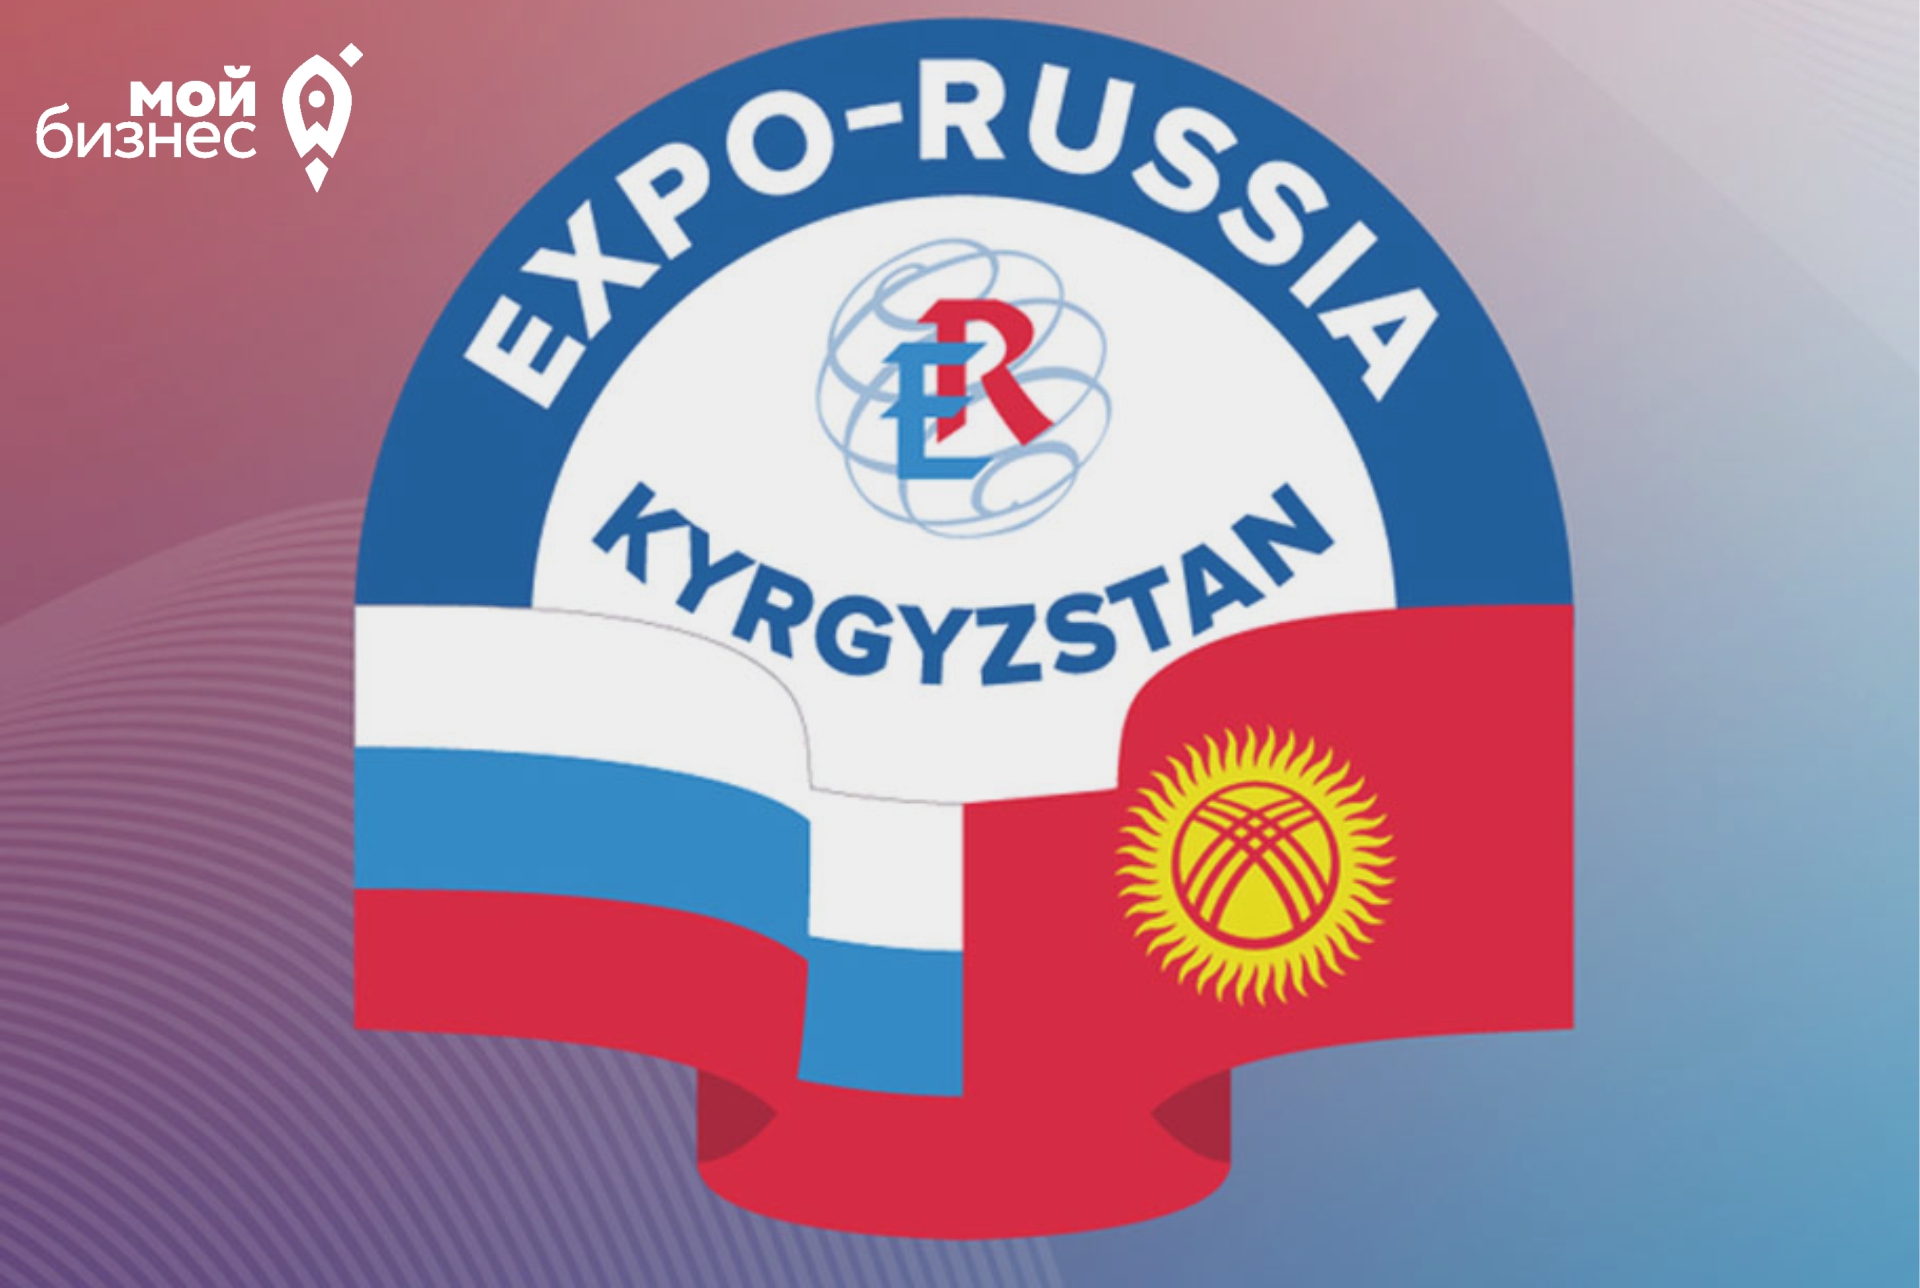 Международная промышленная выставка «EXPO - RUSSIA KYRGYZSTAN 2022» и Российско-кыргызский межрегиональный бизнес-форум